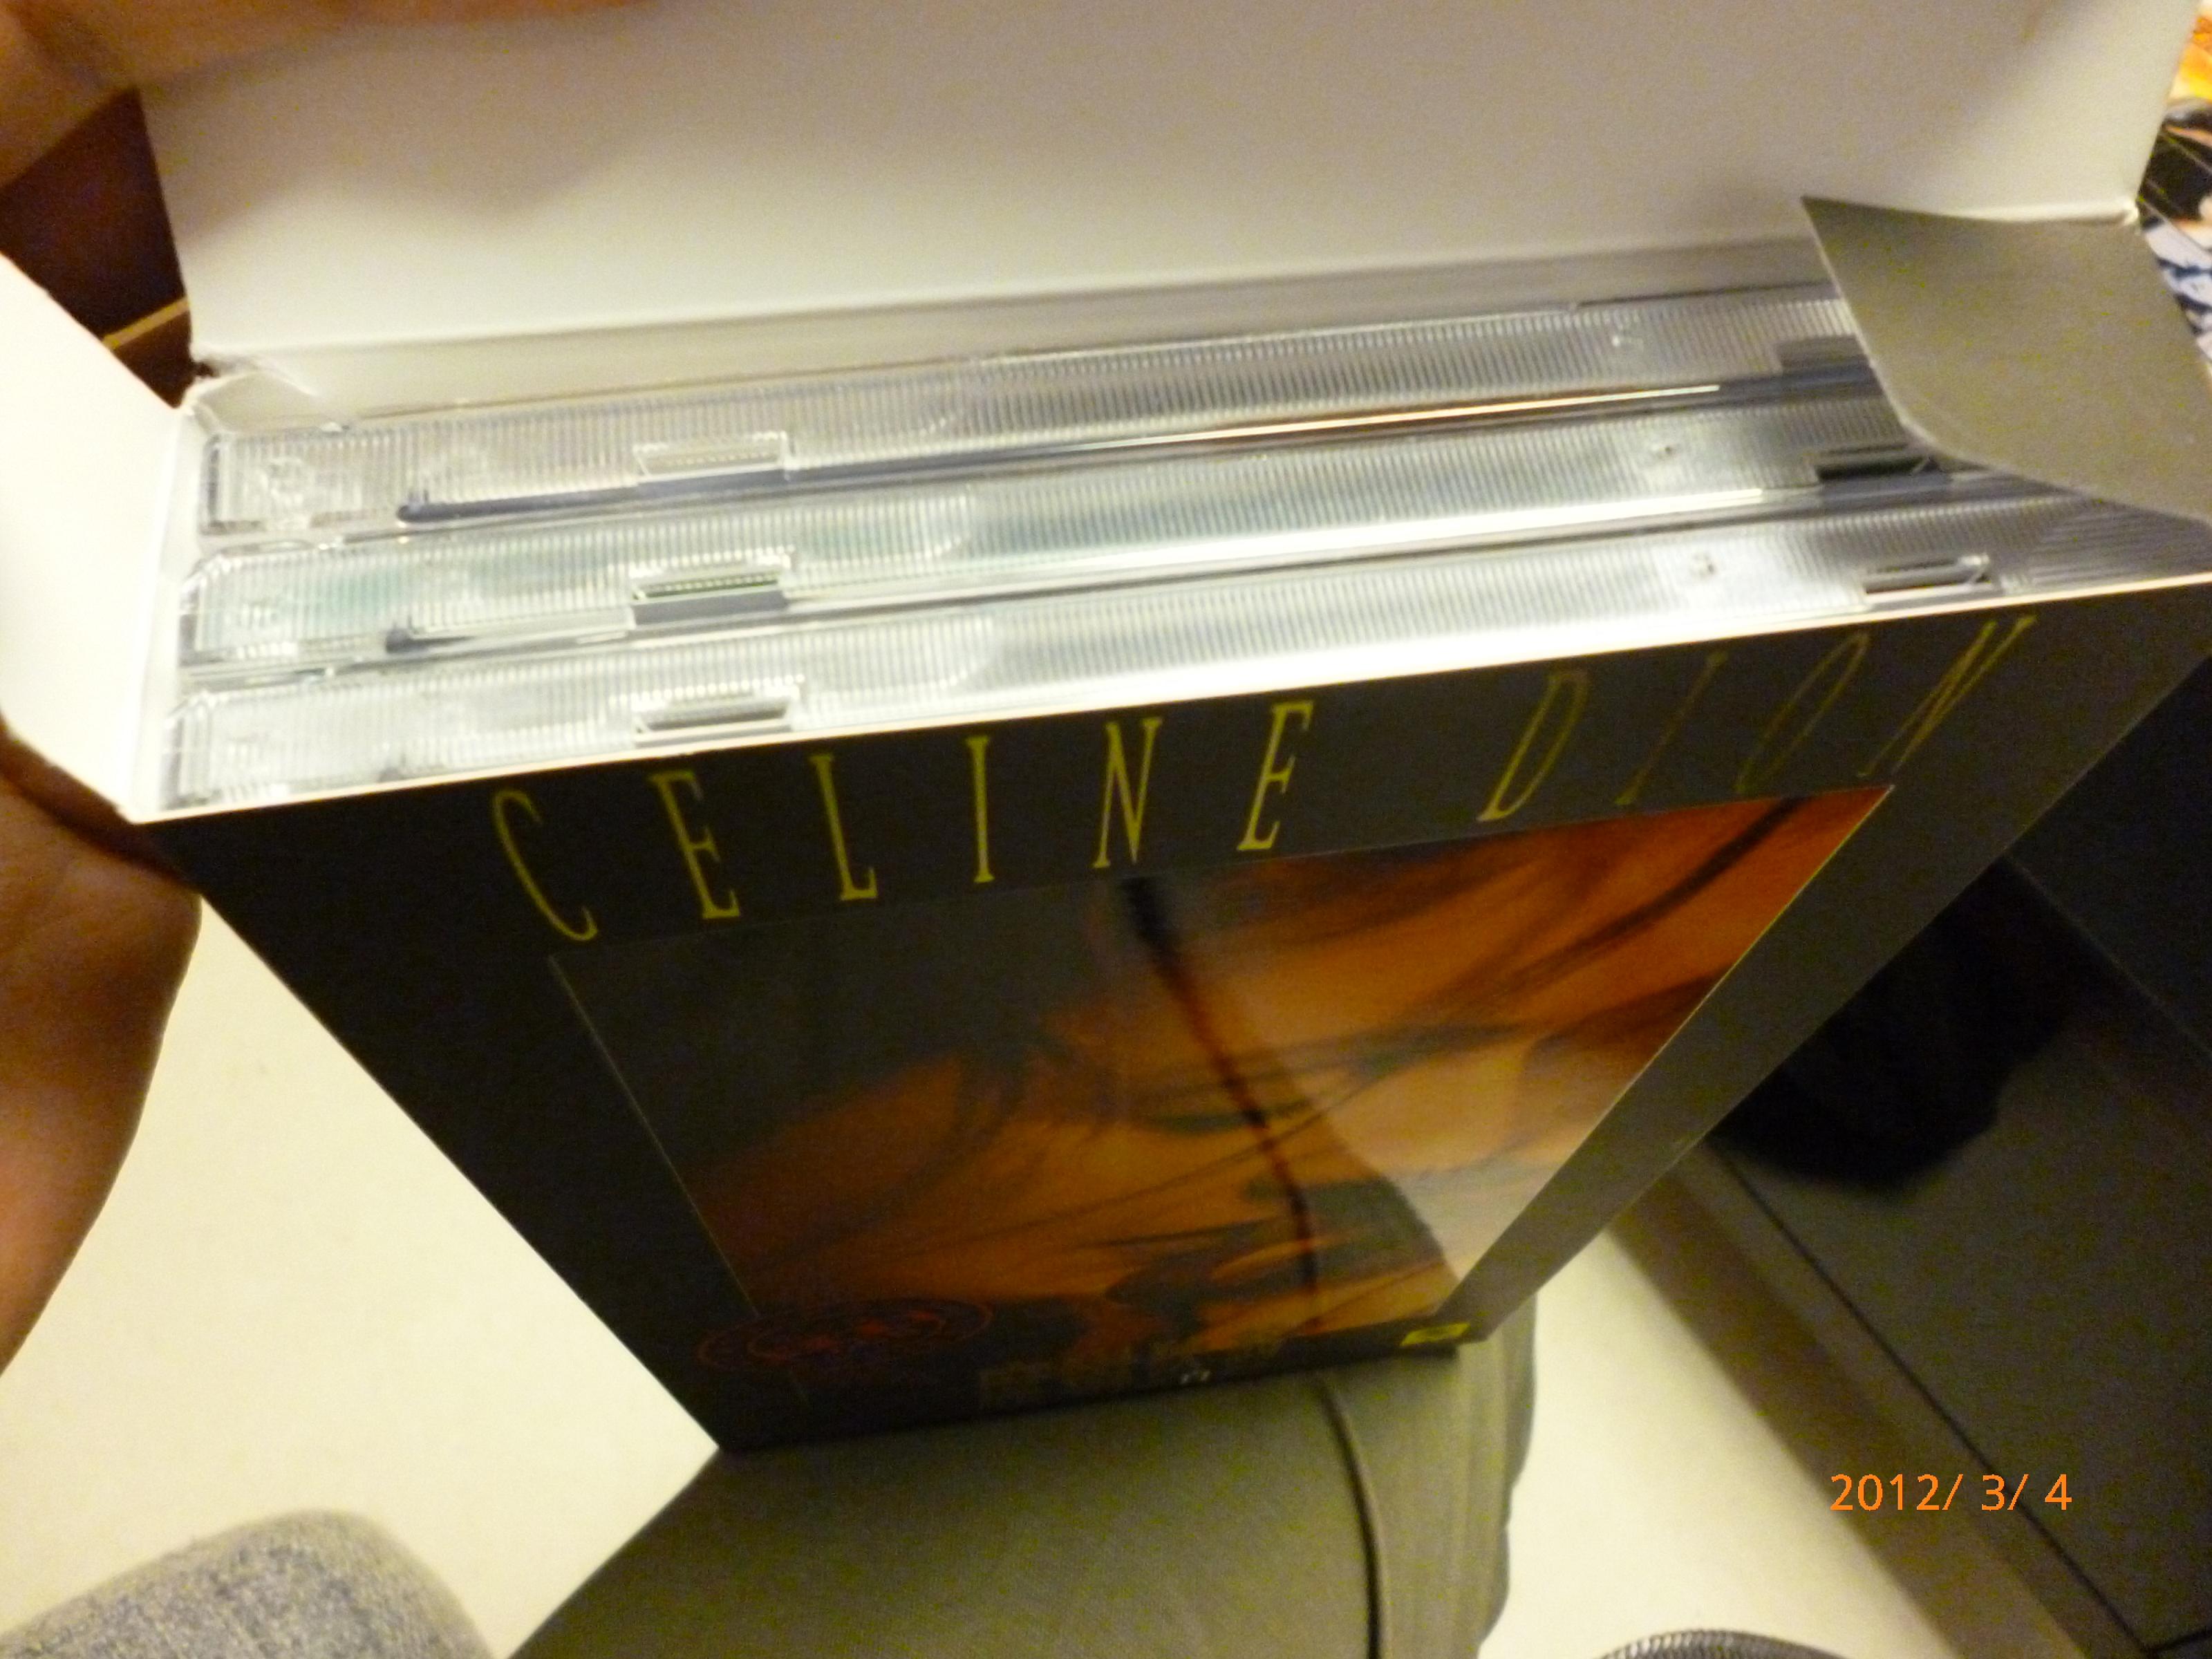 席琳迪翁经典全记录（珍藏套装）（9CD+1VCD）（京东专卖） 实拍图